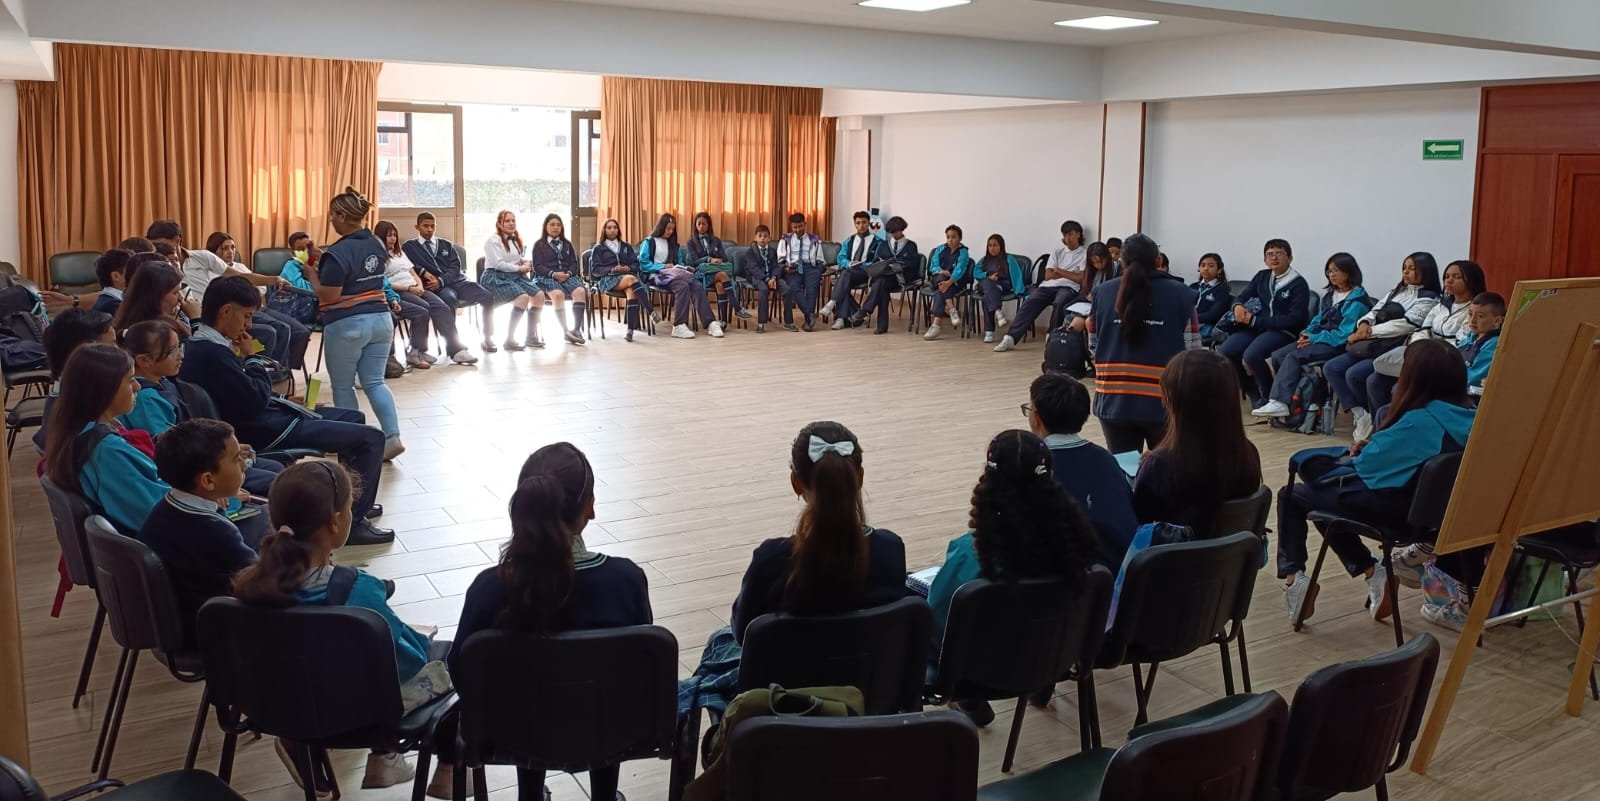 Embajadores de Cultura Regio, la estrategia pedagógica que llega a Sabana Occidente